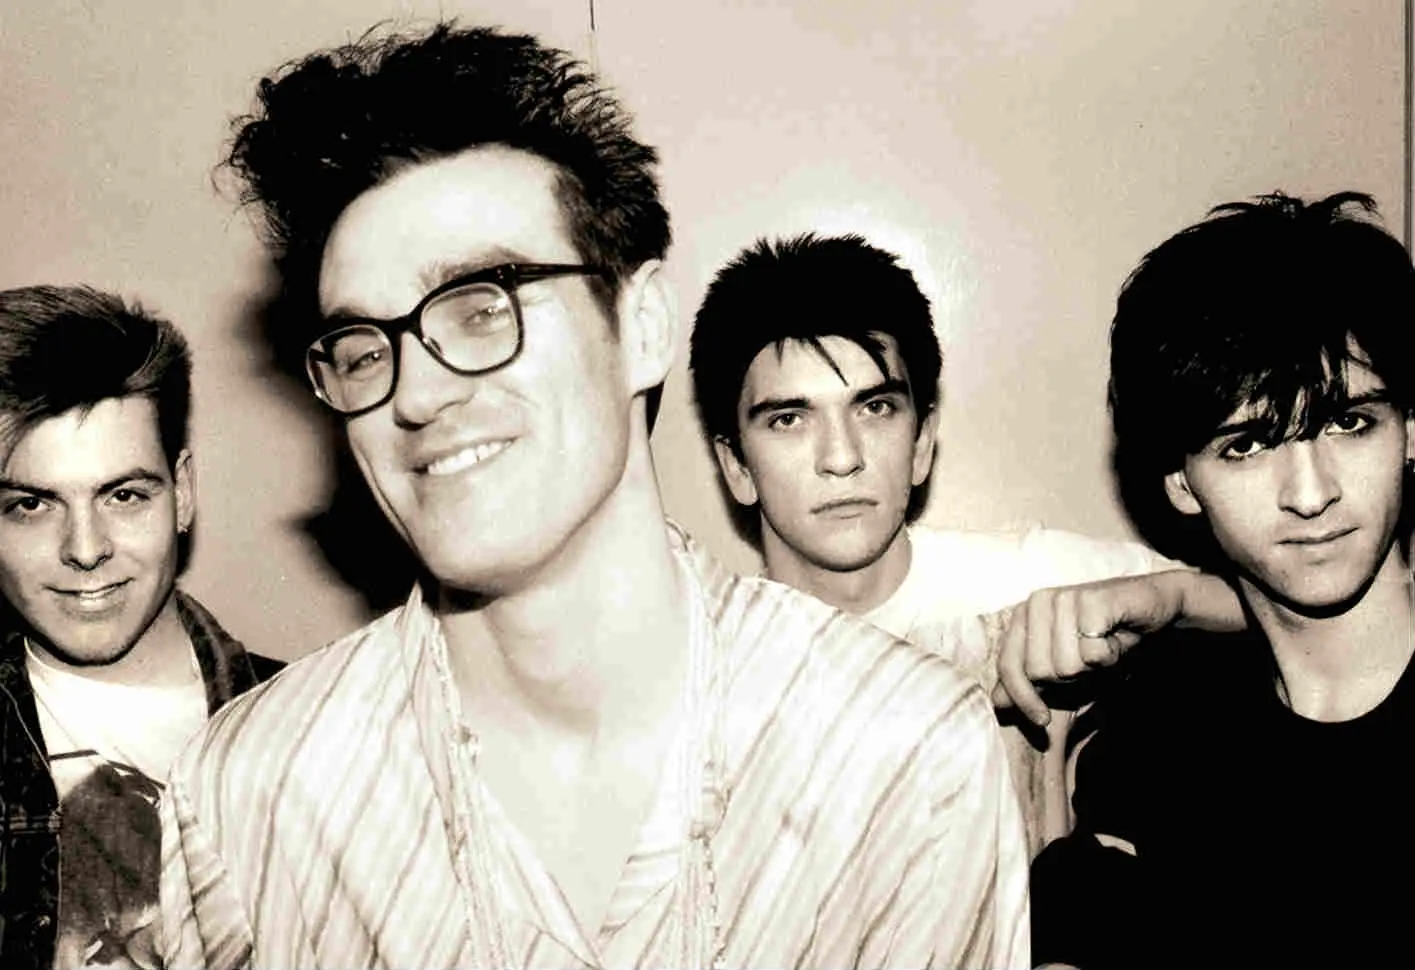 The Smiths pourraient se reformer selon Mike Joyce